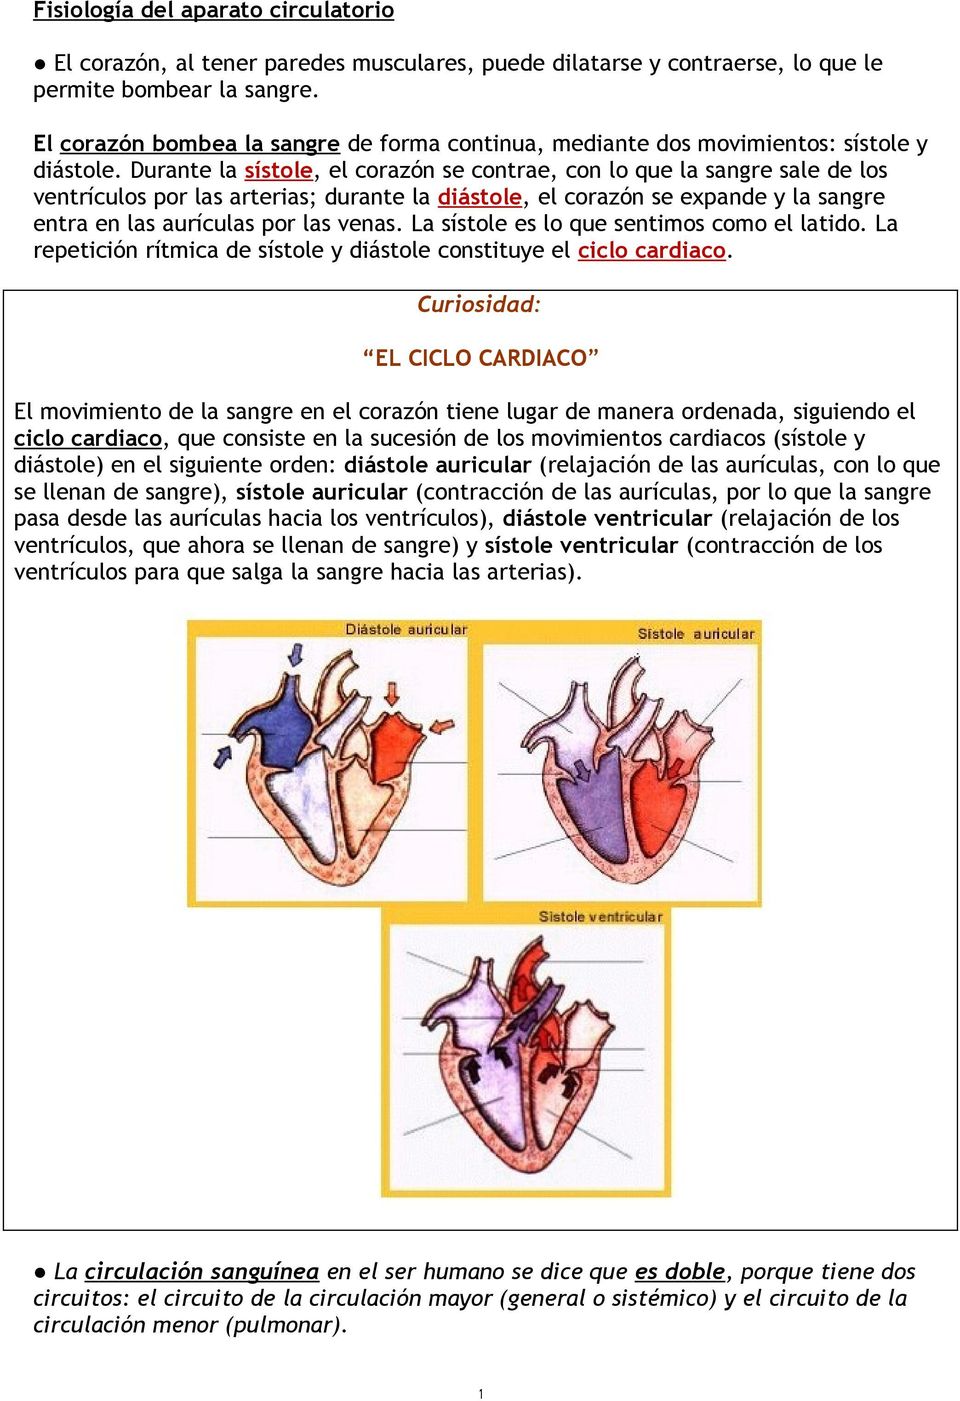 Durante la sístole, el corazón se contrae, con lo que la sangre sale de los ventrículos por las arterias; durante la diástole, el corazón se expande y la sangre entra en las aurículas por las venas.